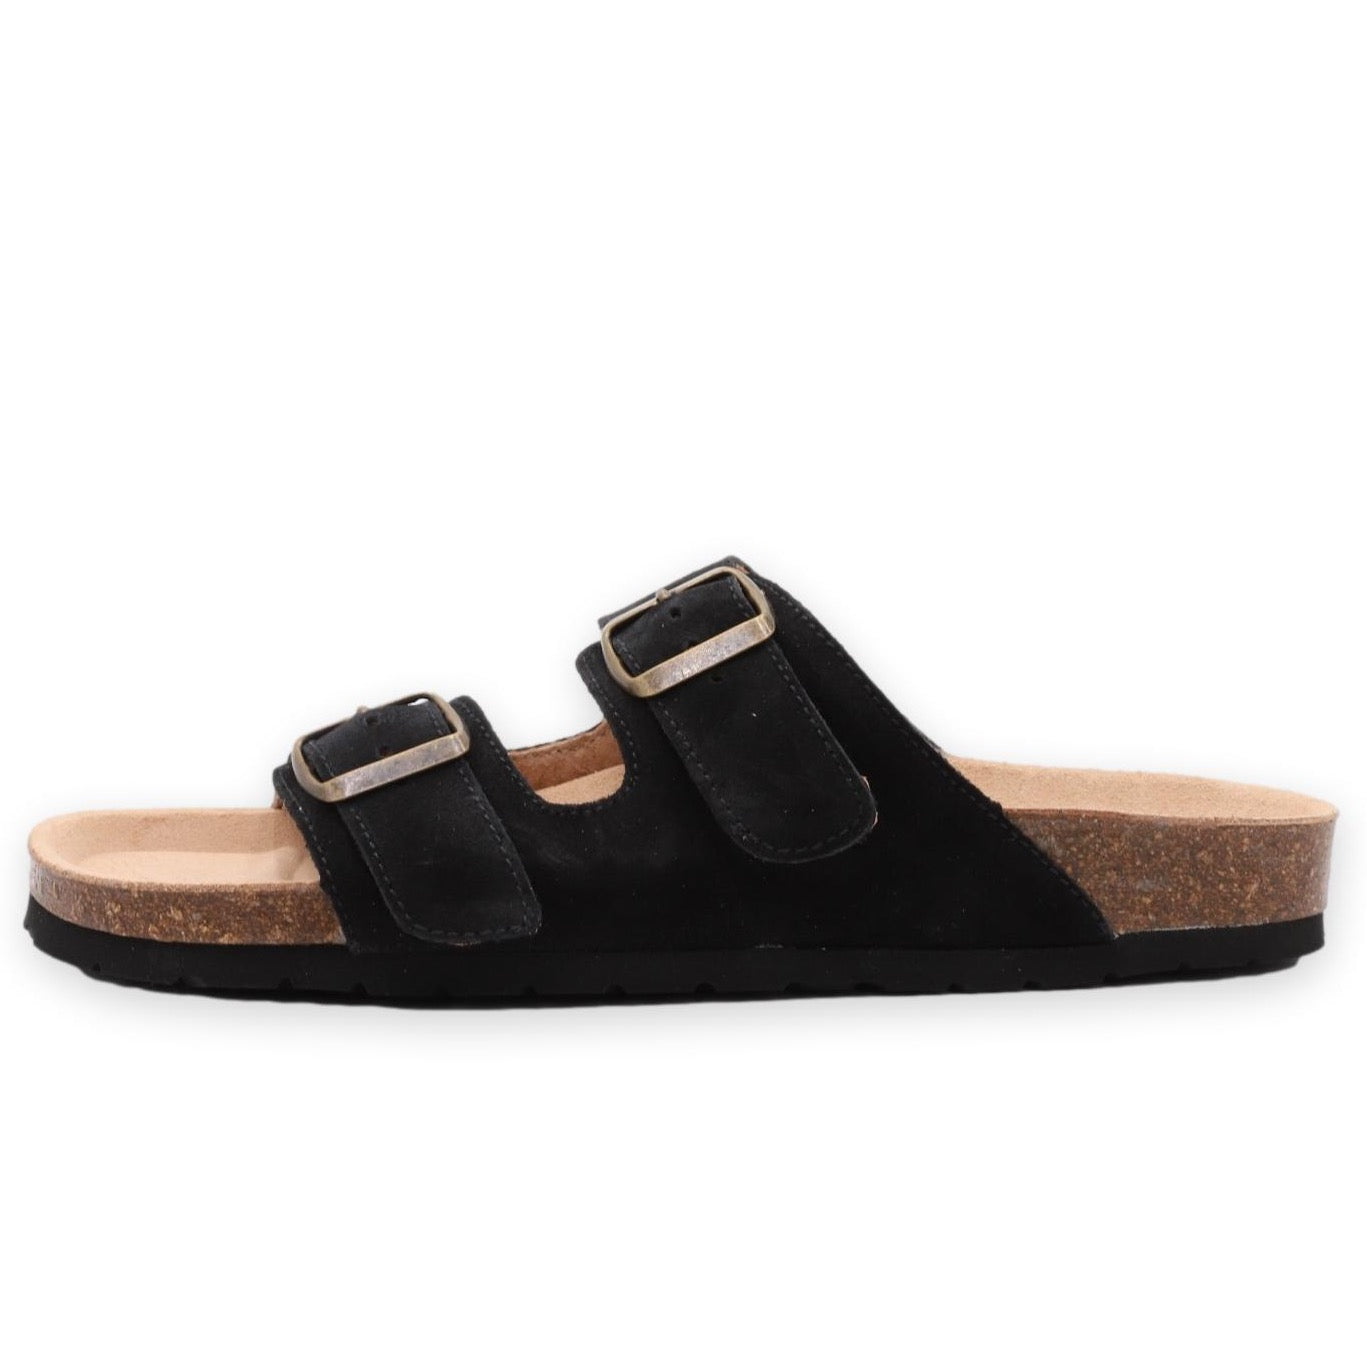 Nordic Black sandals